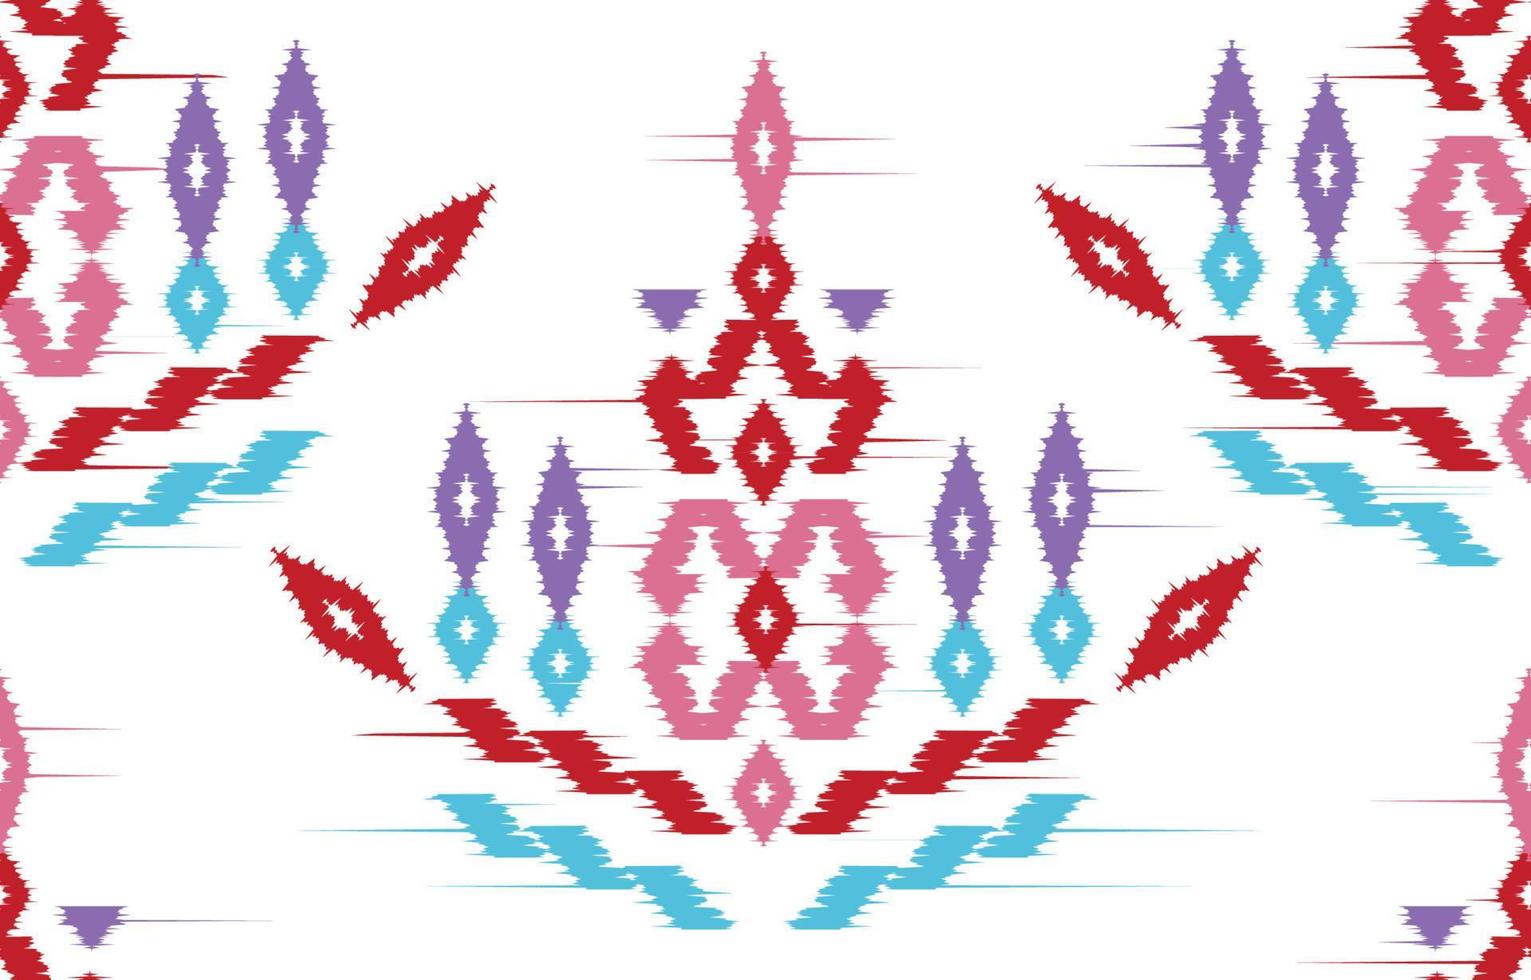 mooi motief etnische ikat navajo. naadloze kasuri patroon in tribal, folk borduurwerk, mexicaanse, indische, Marokkaanse style.aztec geometrische kunst ornament print. gestructureerd ontwerp voor tapijt, stof. vector